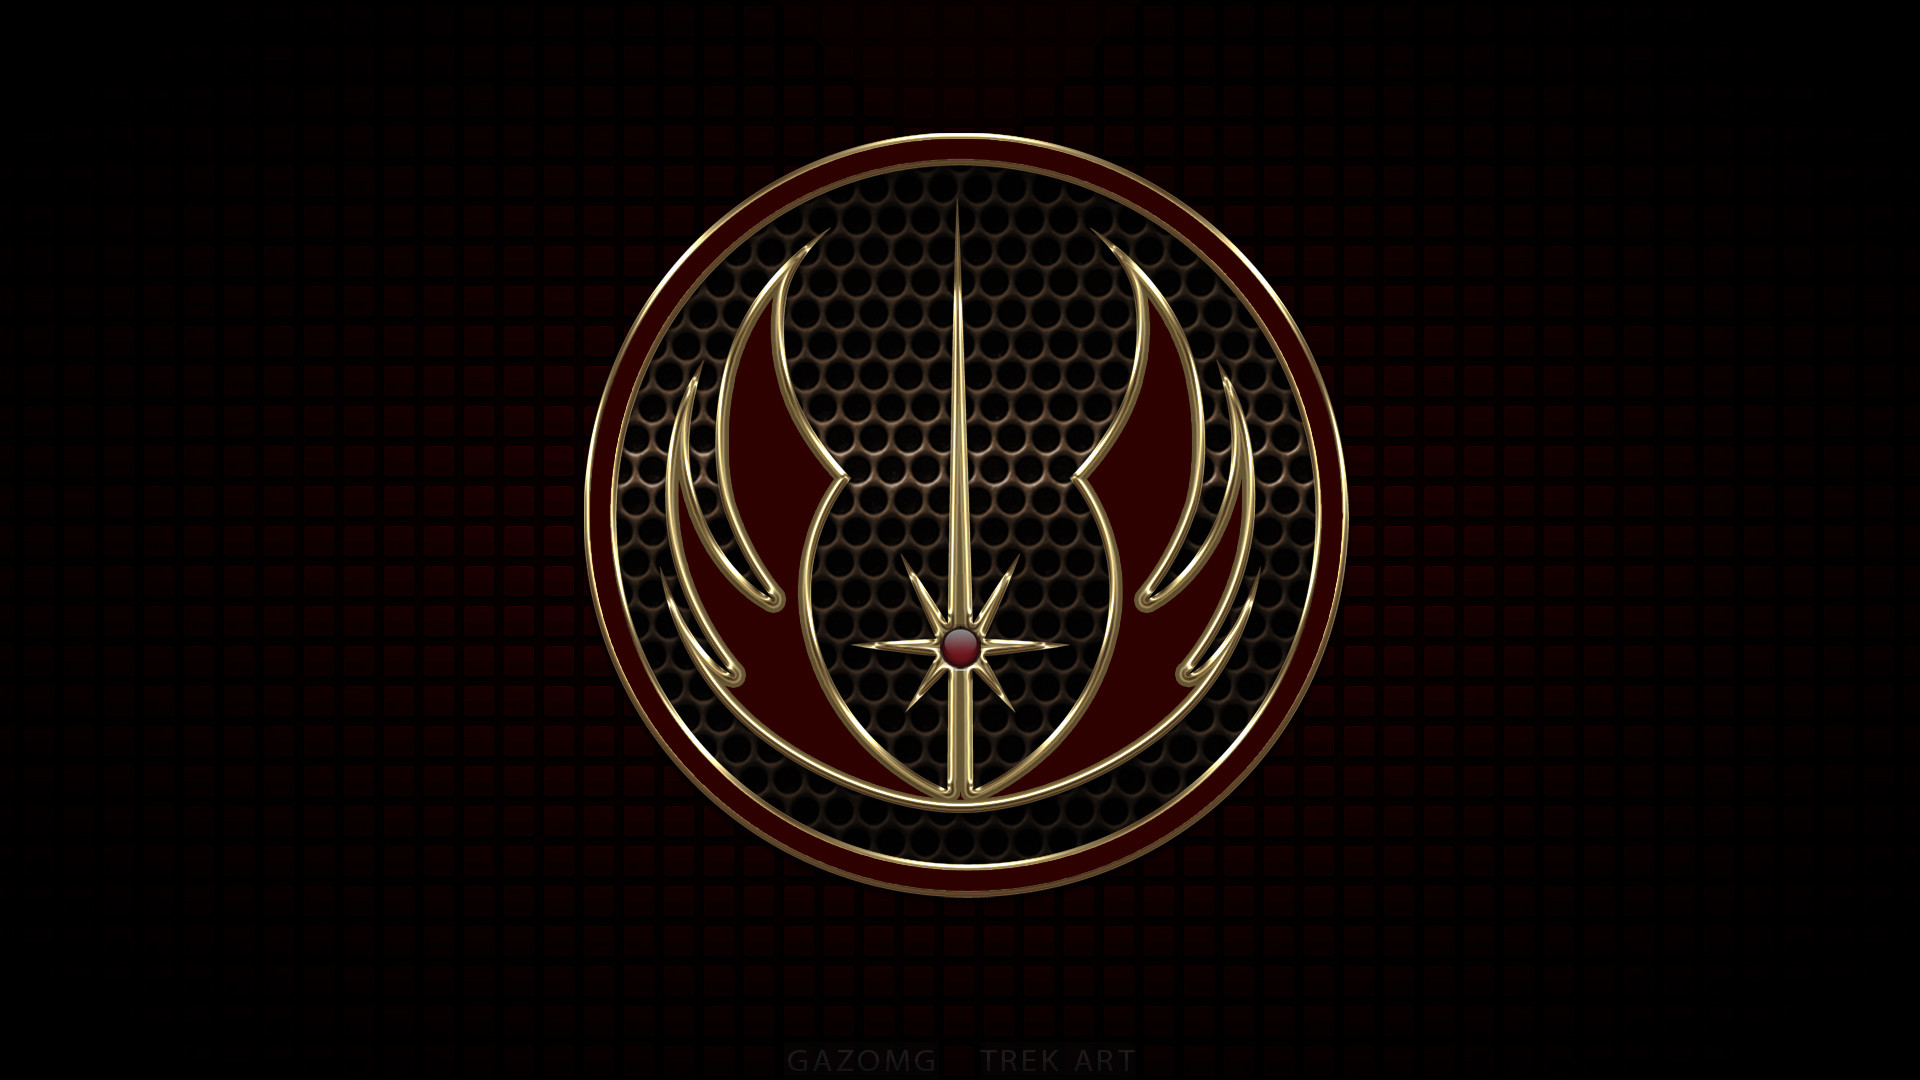 1920x1080 ... Star Wars Jedi Logo by gazomg